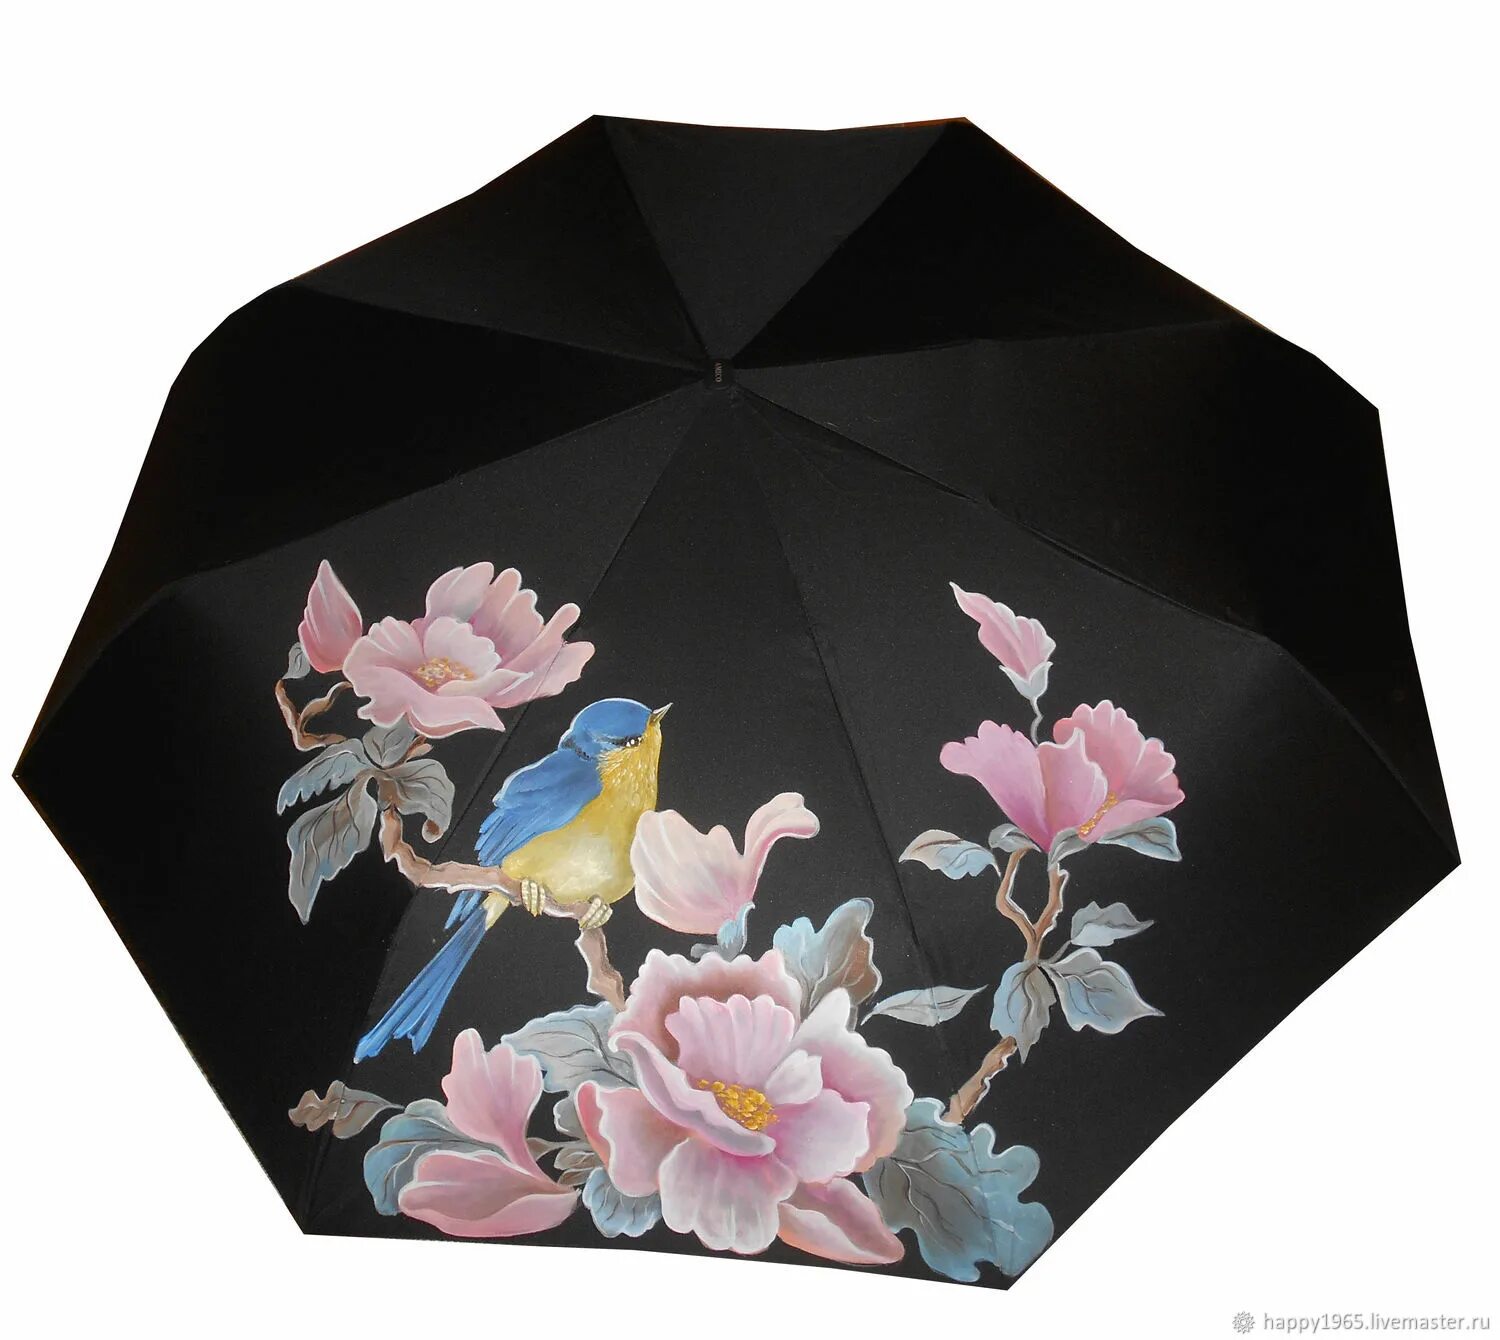 Мастер зонтиков. Зонт расписной. Зонт в японском стиле. Зонт "цветы".